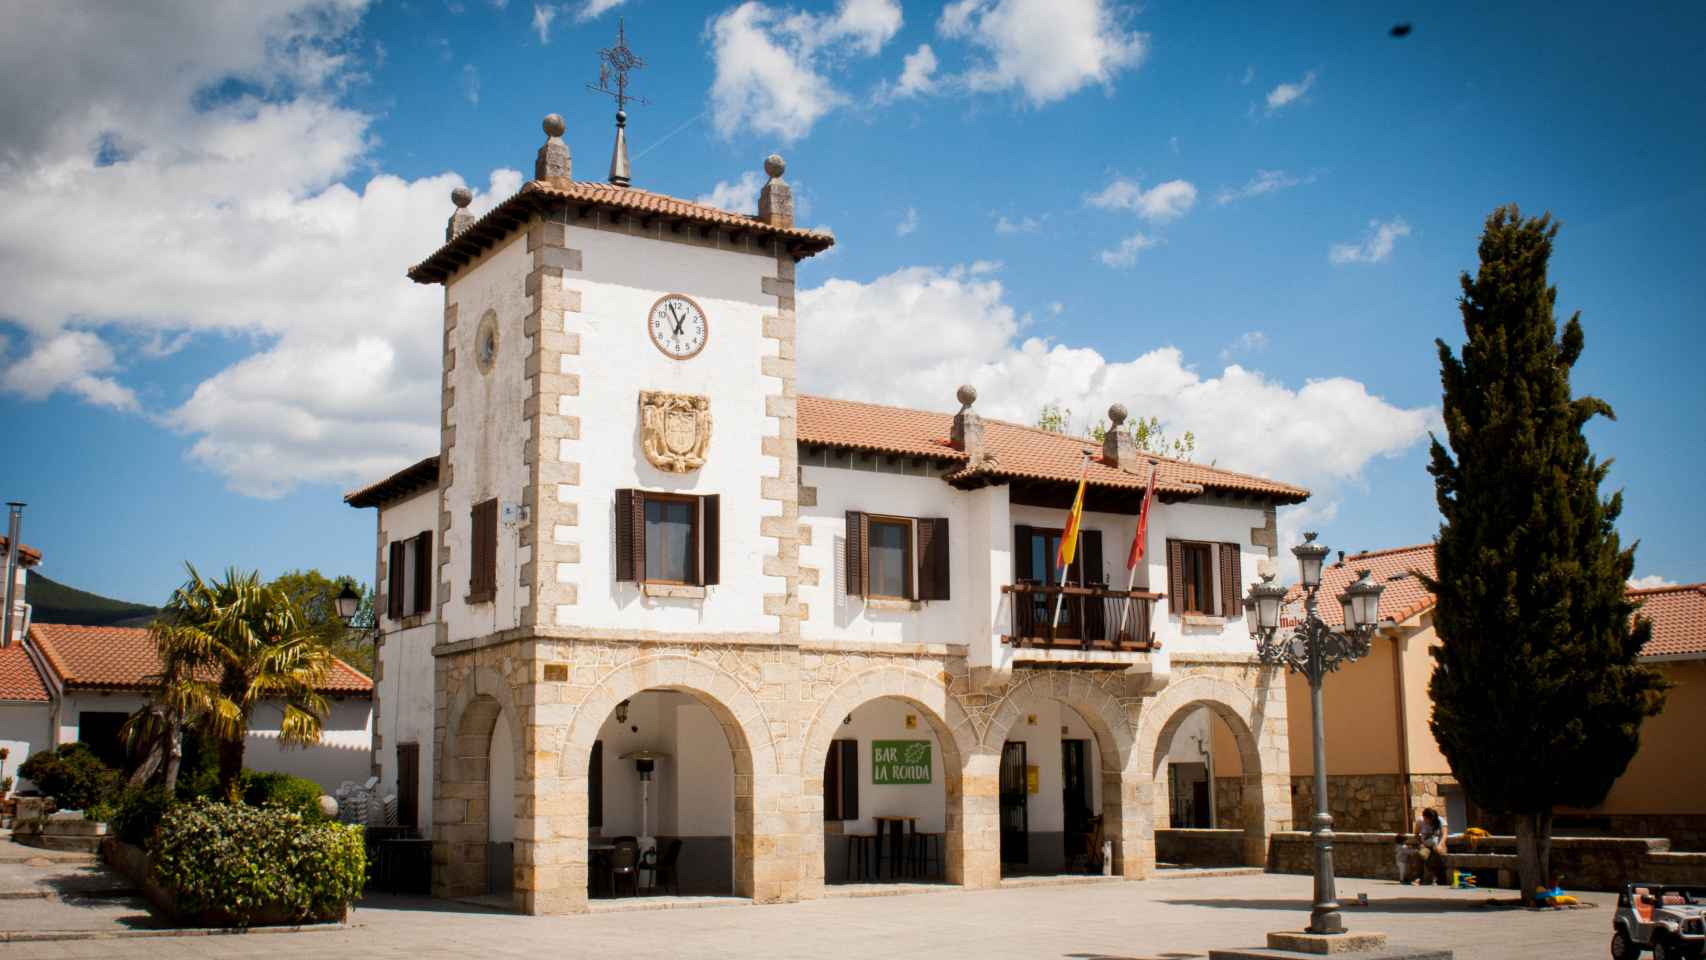 El Ayuntamiento de Navarredonda y San Mamés, que comparte edificio con el bar La Ronda.